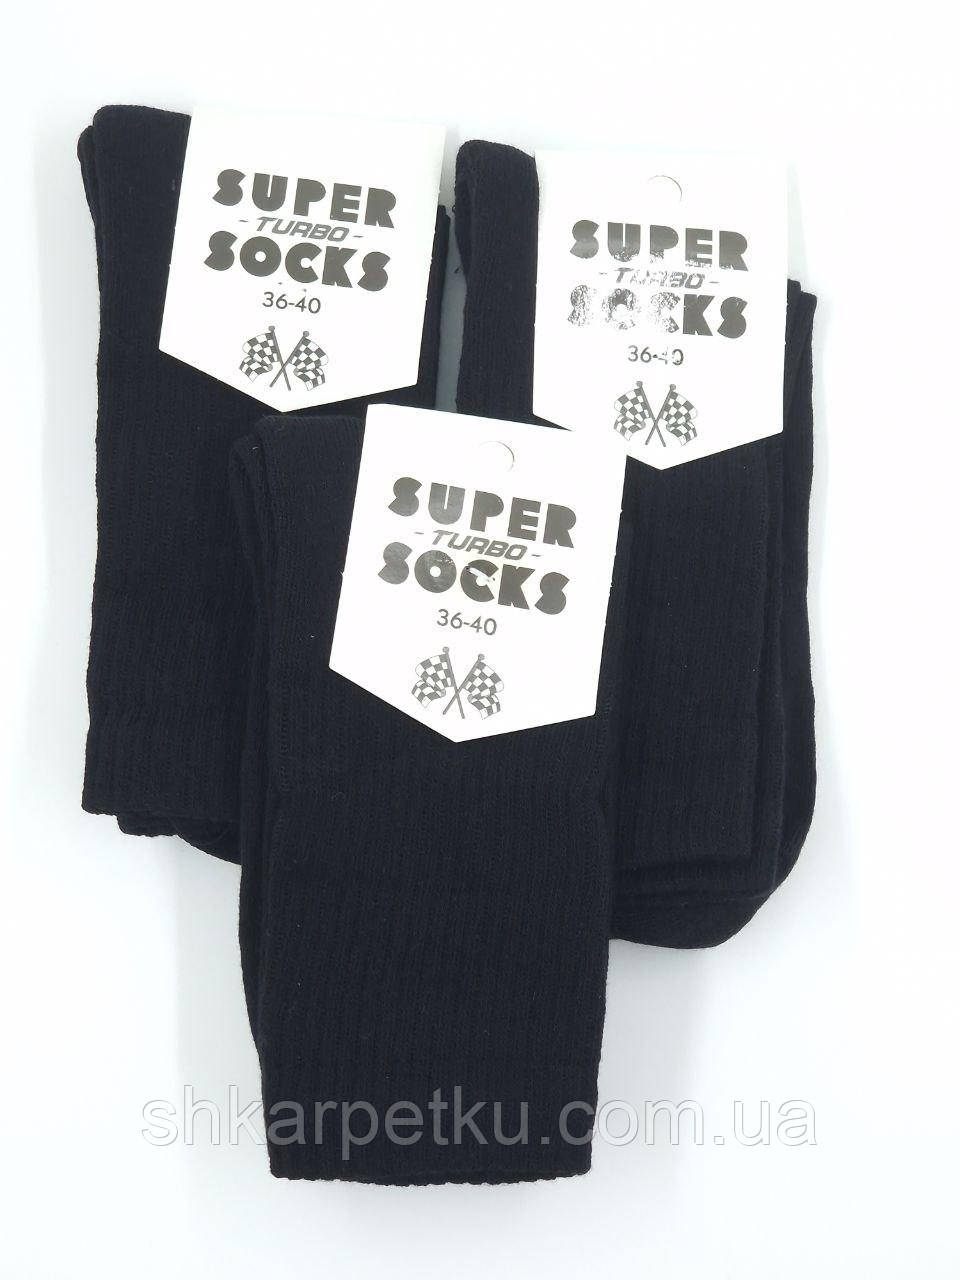 Жіночі зимові високі тенісні спортивні шкарпетки стрейчеві Super Socks махрова підошва однотонні 36-40 12 пар в уп чорні